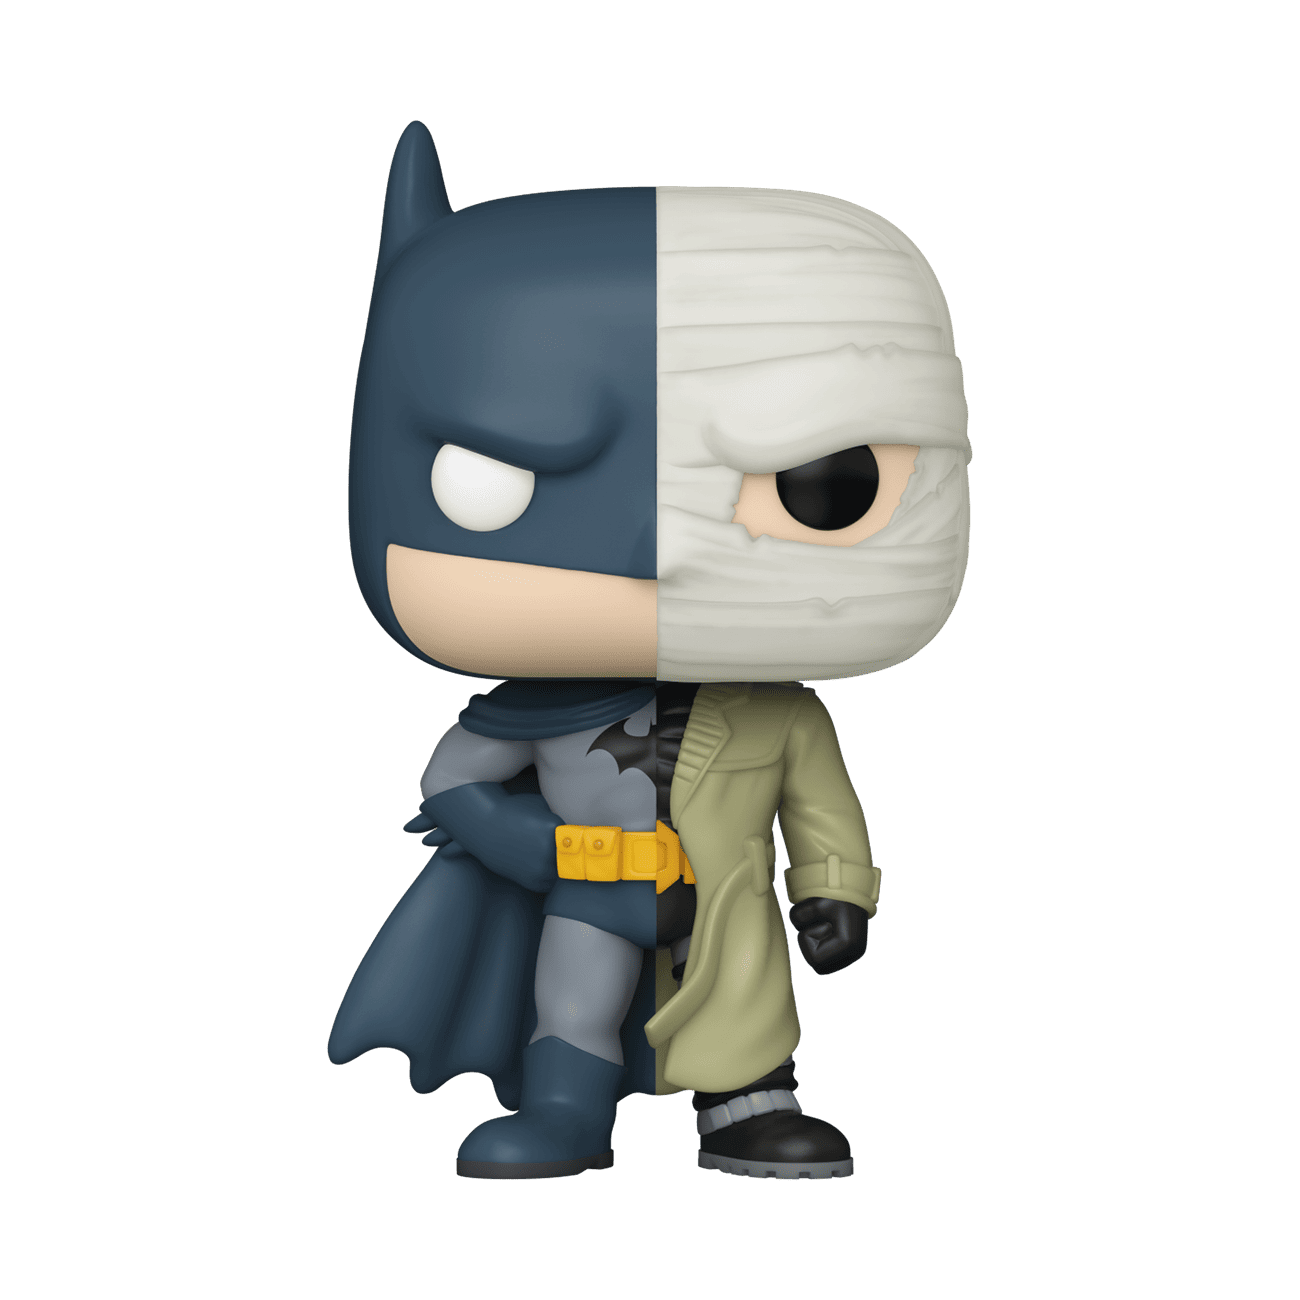 hush vs batman